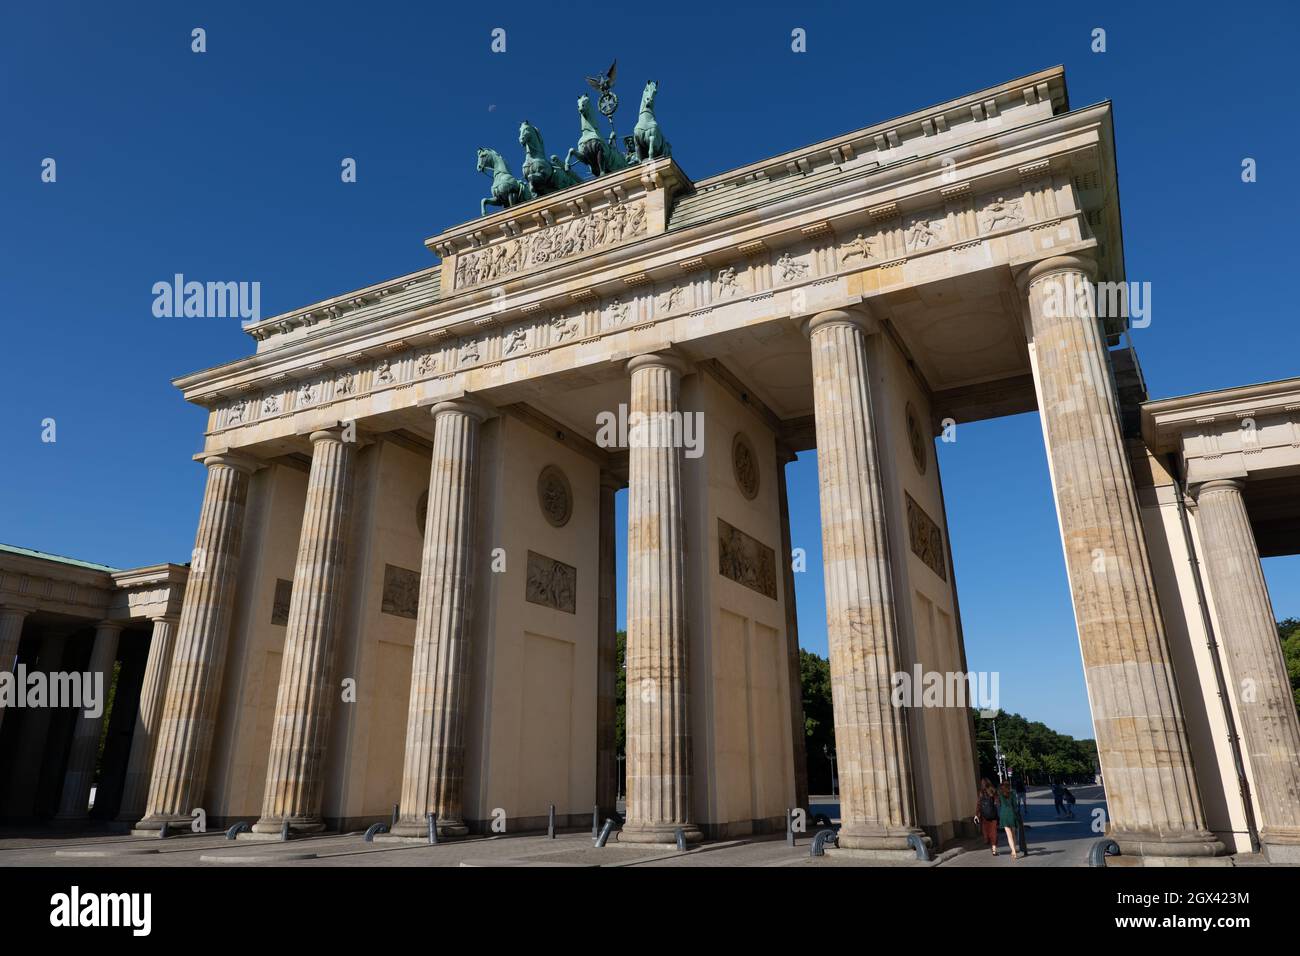 Germania, Berlino, porta di Brandeburgo, pietra miliare monumentale della città, architettura in stile neoclassico. Foto Stock